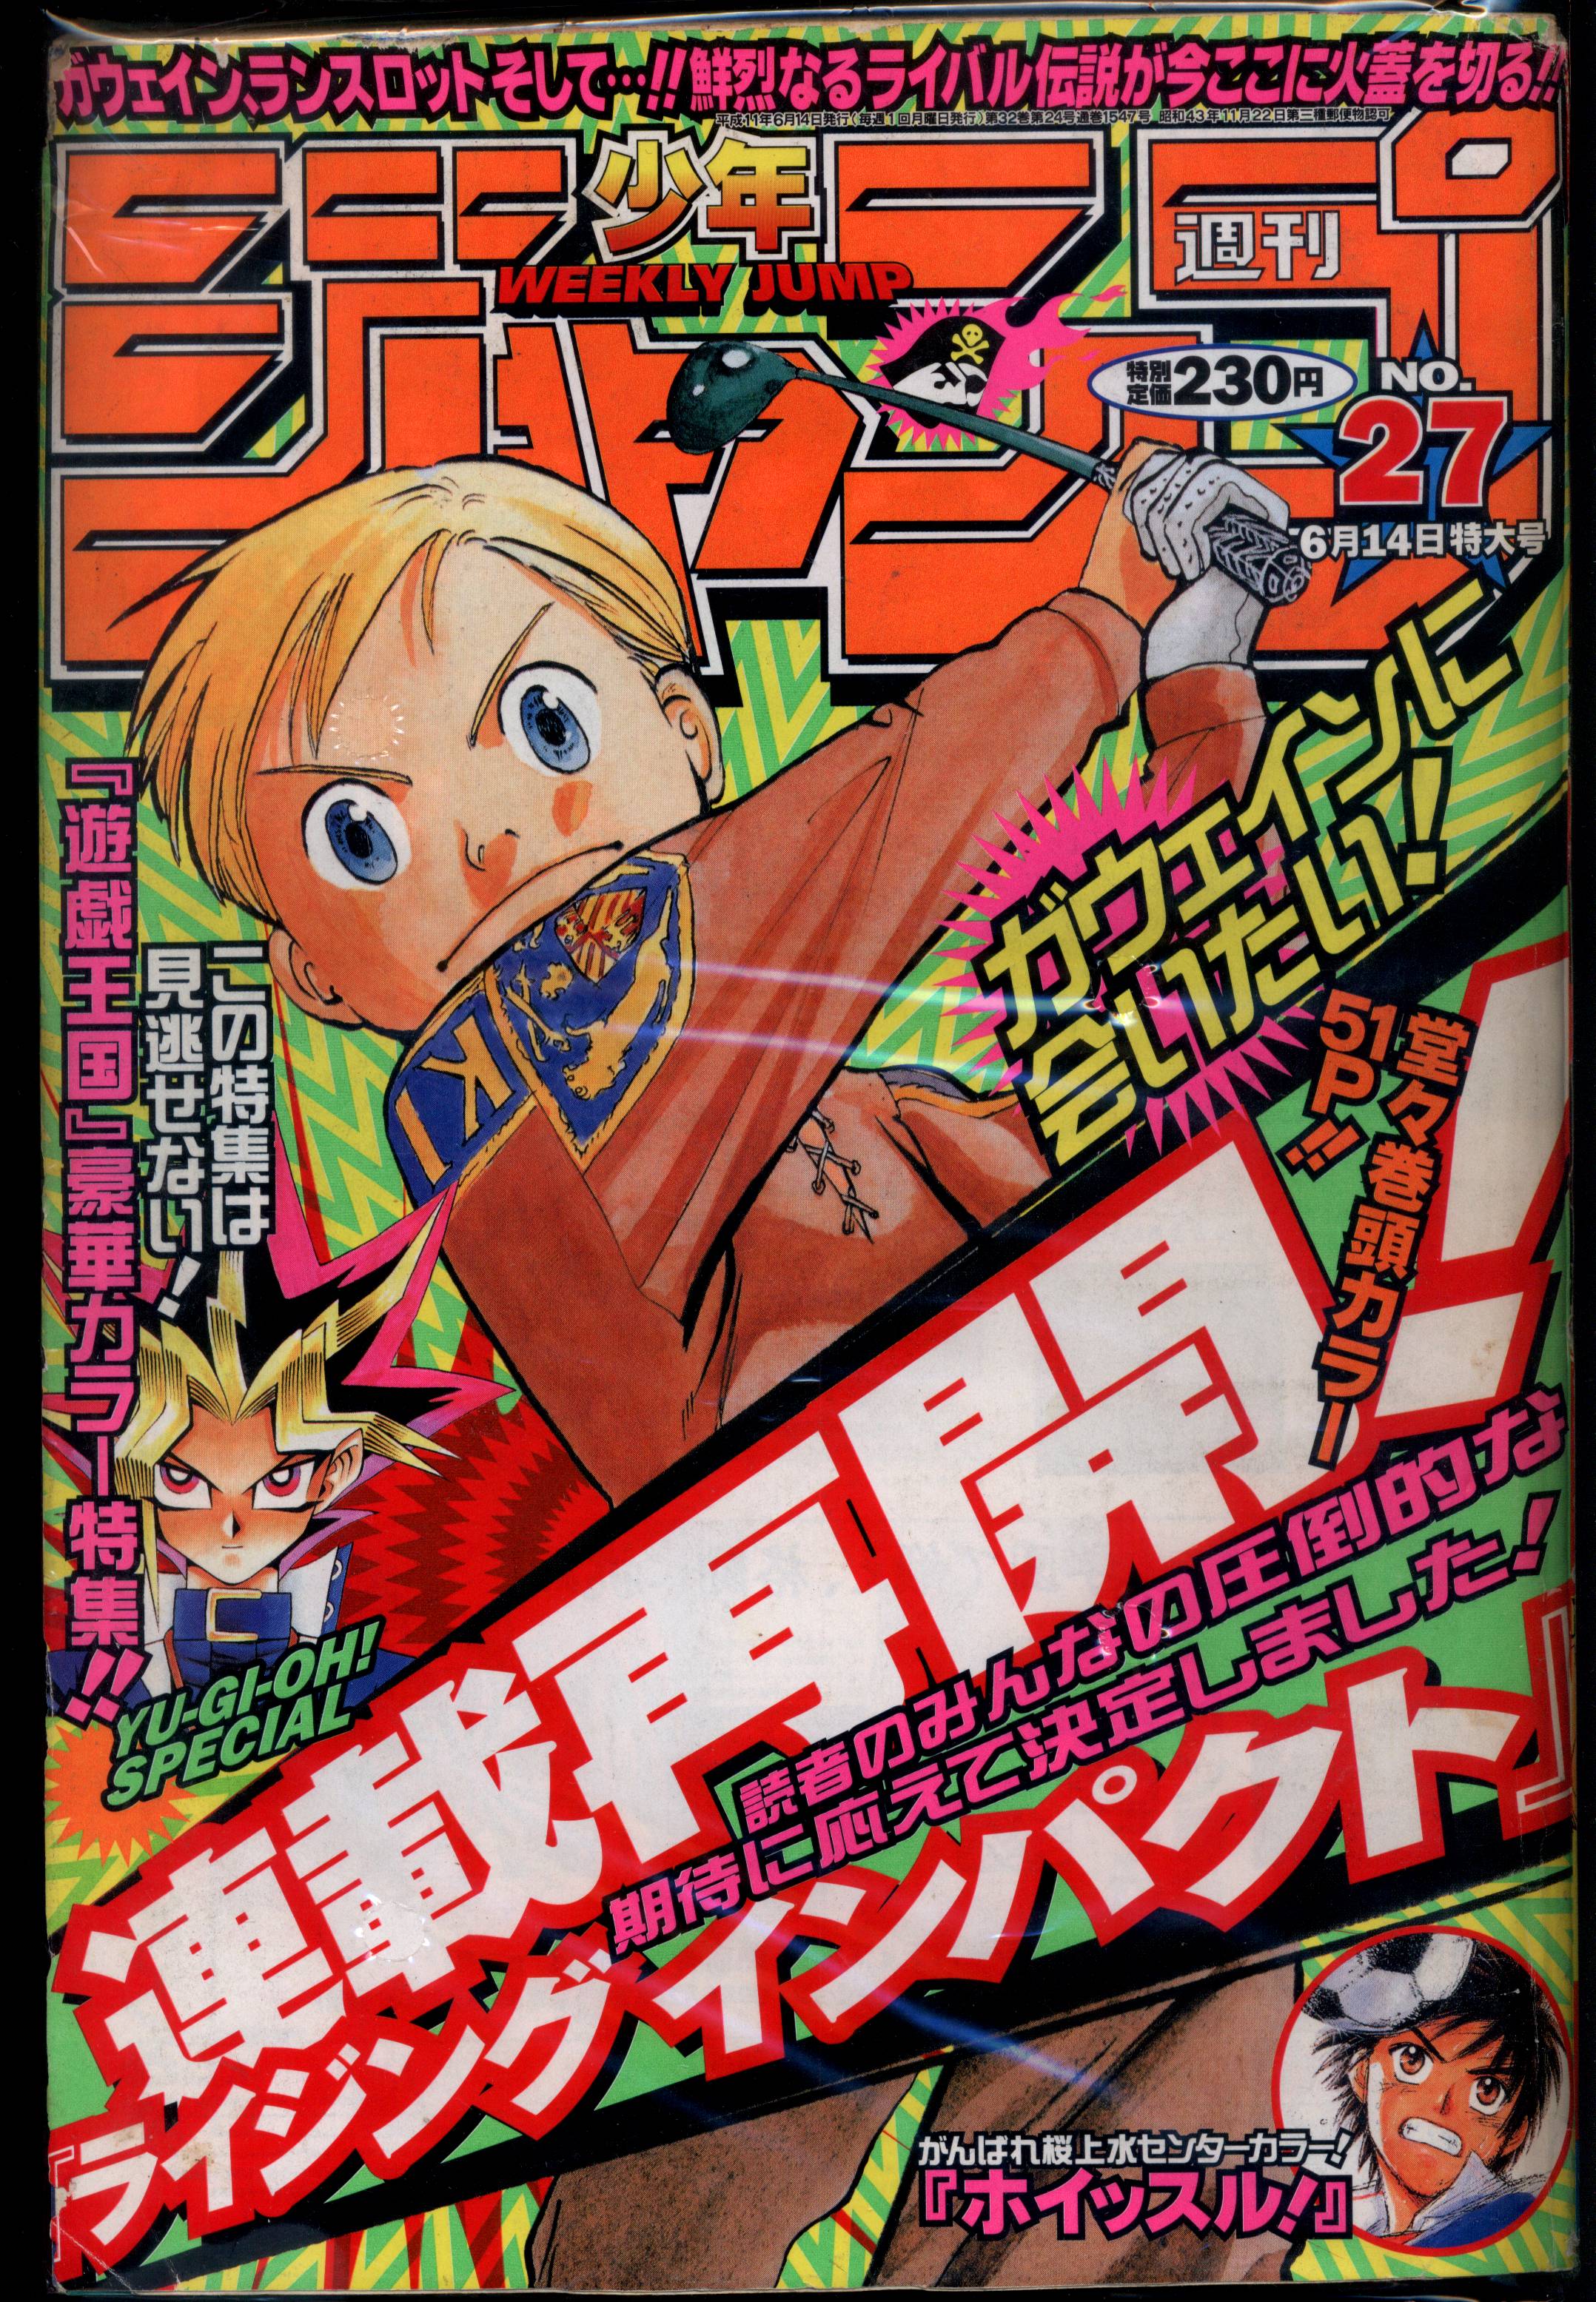 週刊少年ジャンプ 1999年 43号【NARUTO -ナルト- 新連載号】 - 少年漫画